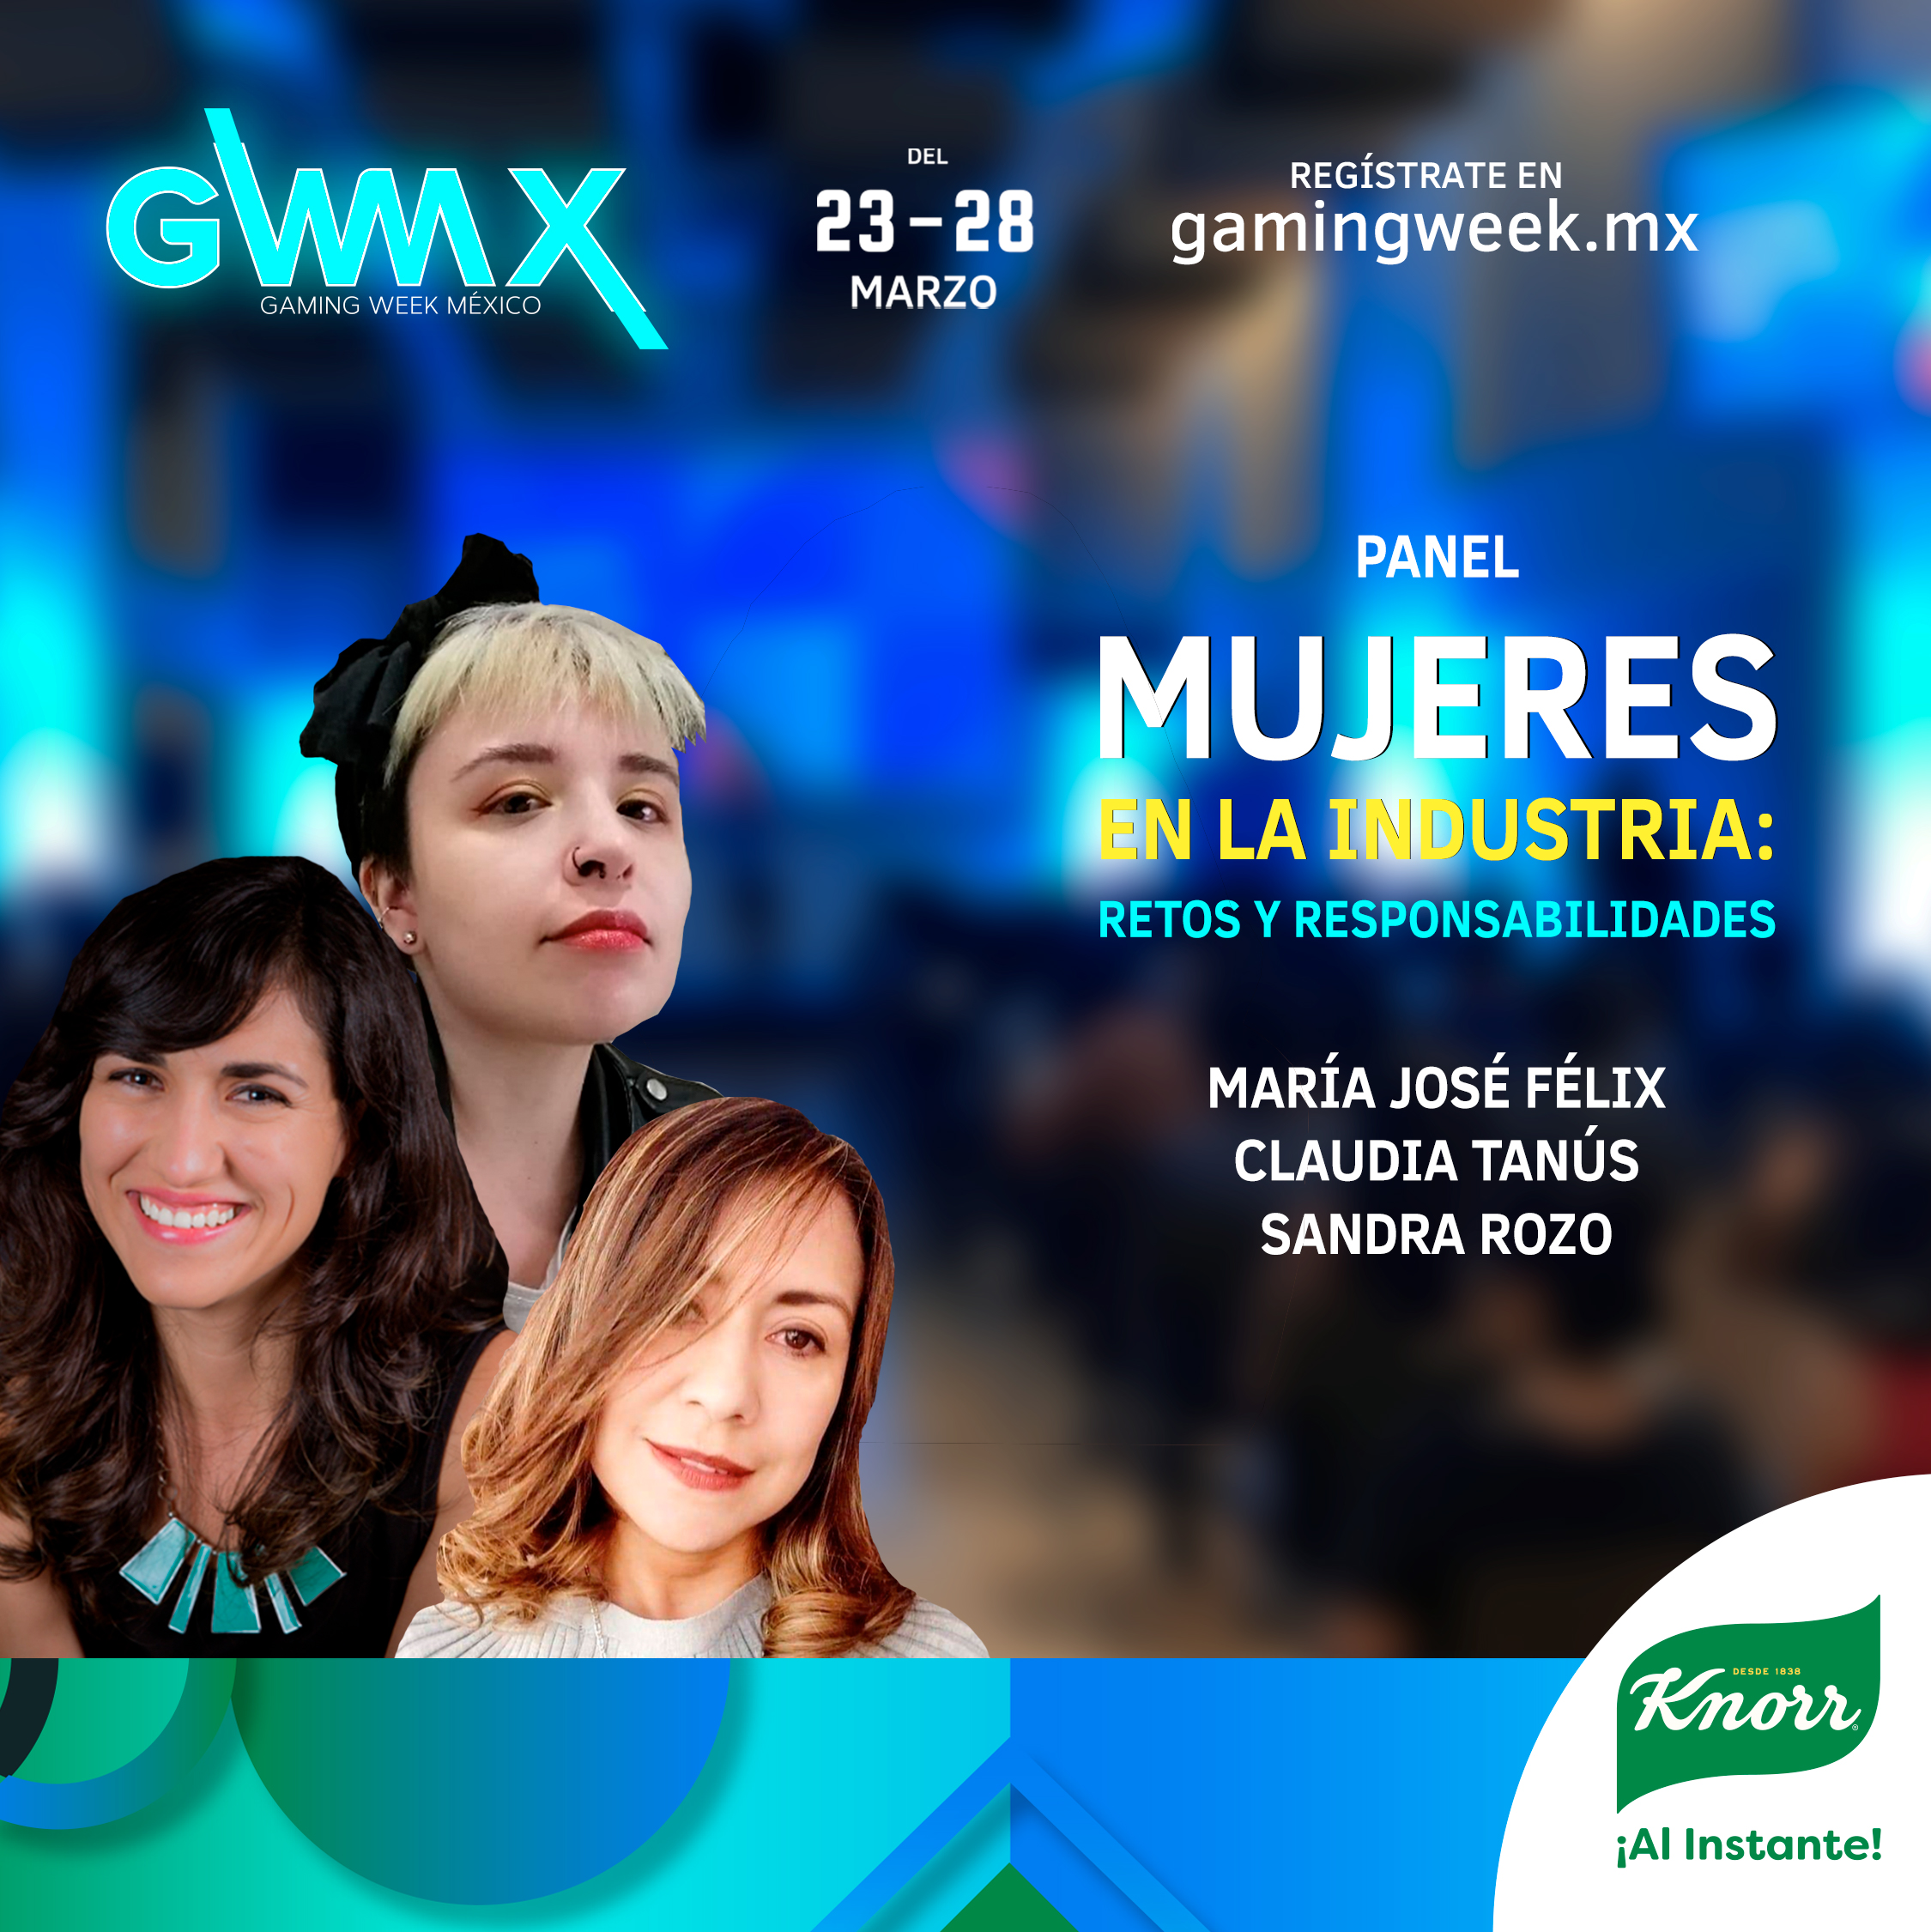 Gaming Week Mx - Mujeres en la industria